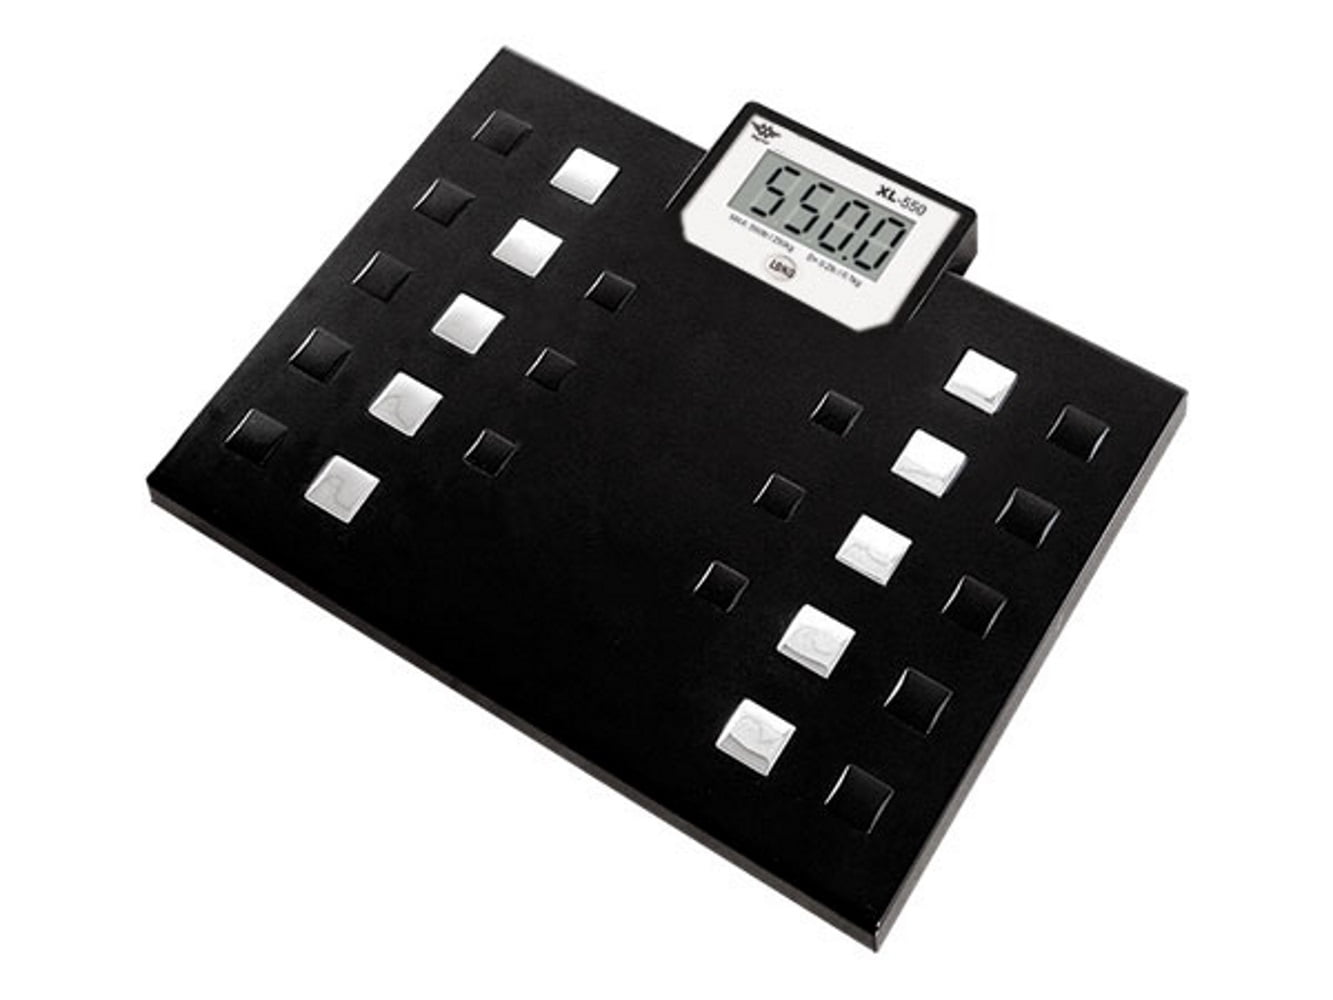  RunSTAR 550lb Bathroom Digital Scale for Body Weight